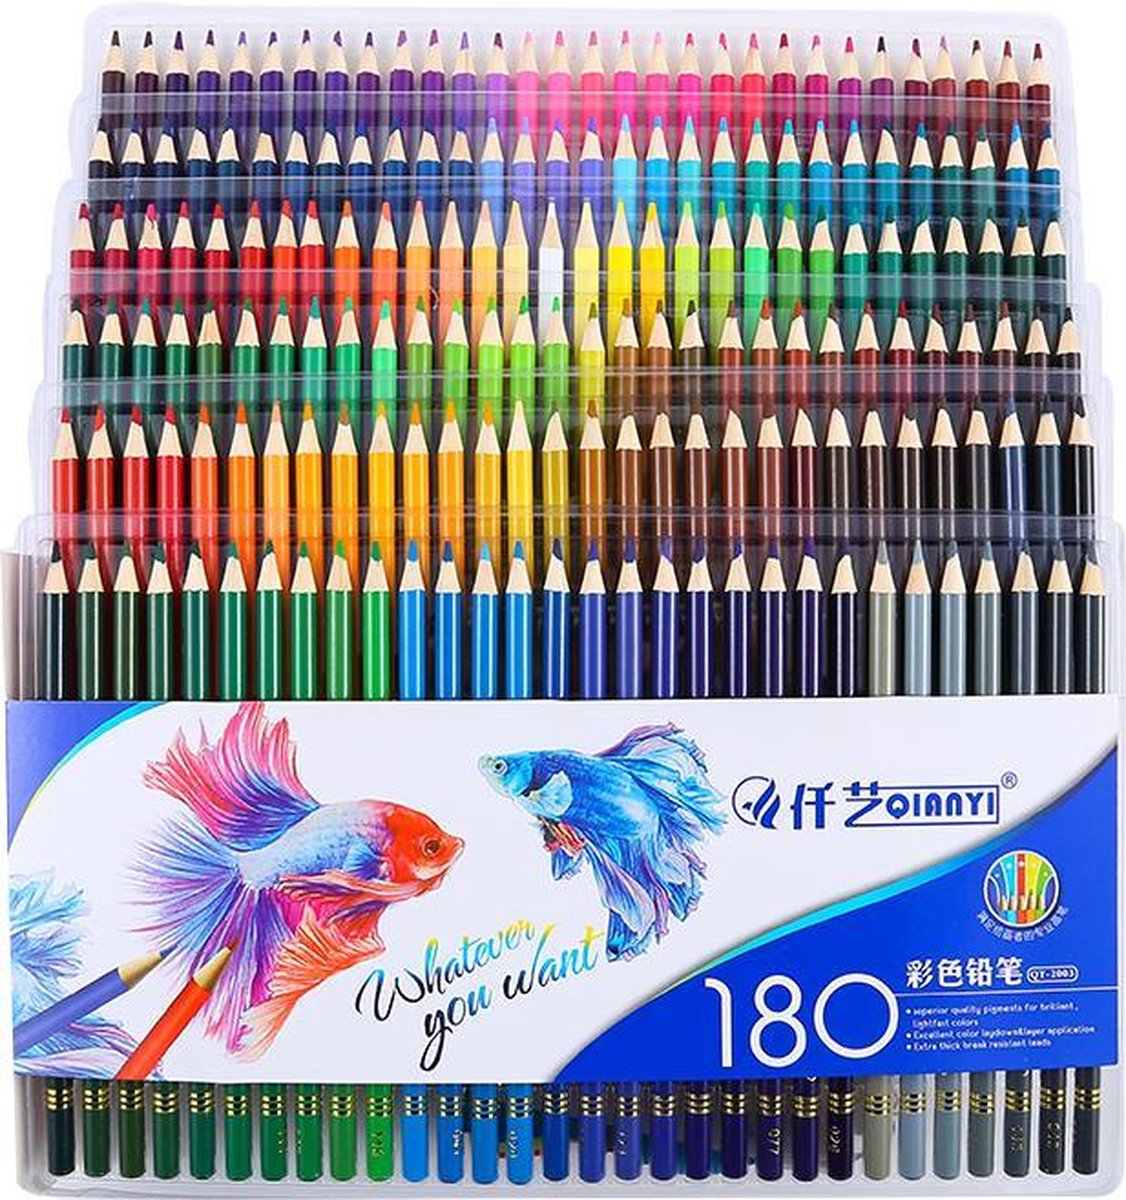 Boîte de 120 Crayons de Couleur , Les Meilleurs Crayons pour Enfants,  Adultes et Artistes. Idéal pour Tous Les Types de coloriage